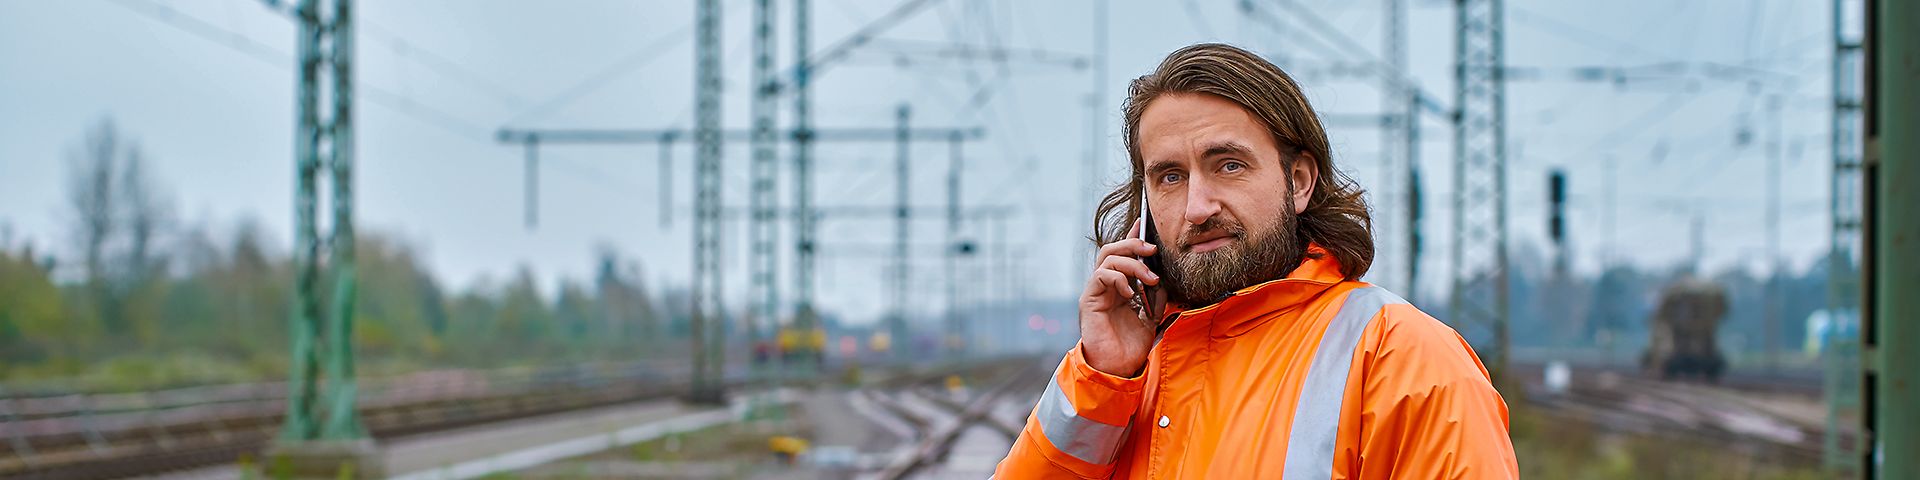 Ein Elektroingenieur steht in Warnkleidung am Gleis und telefoniert